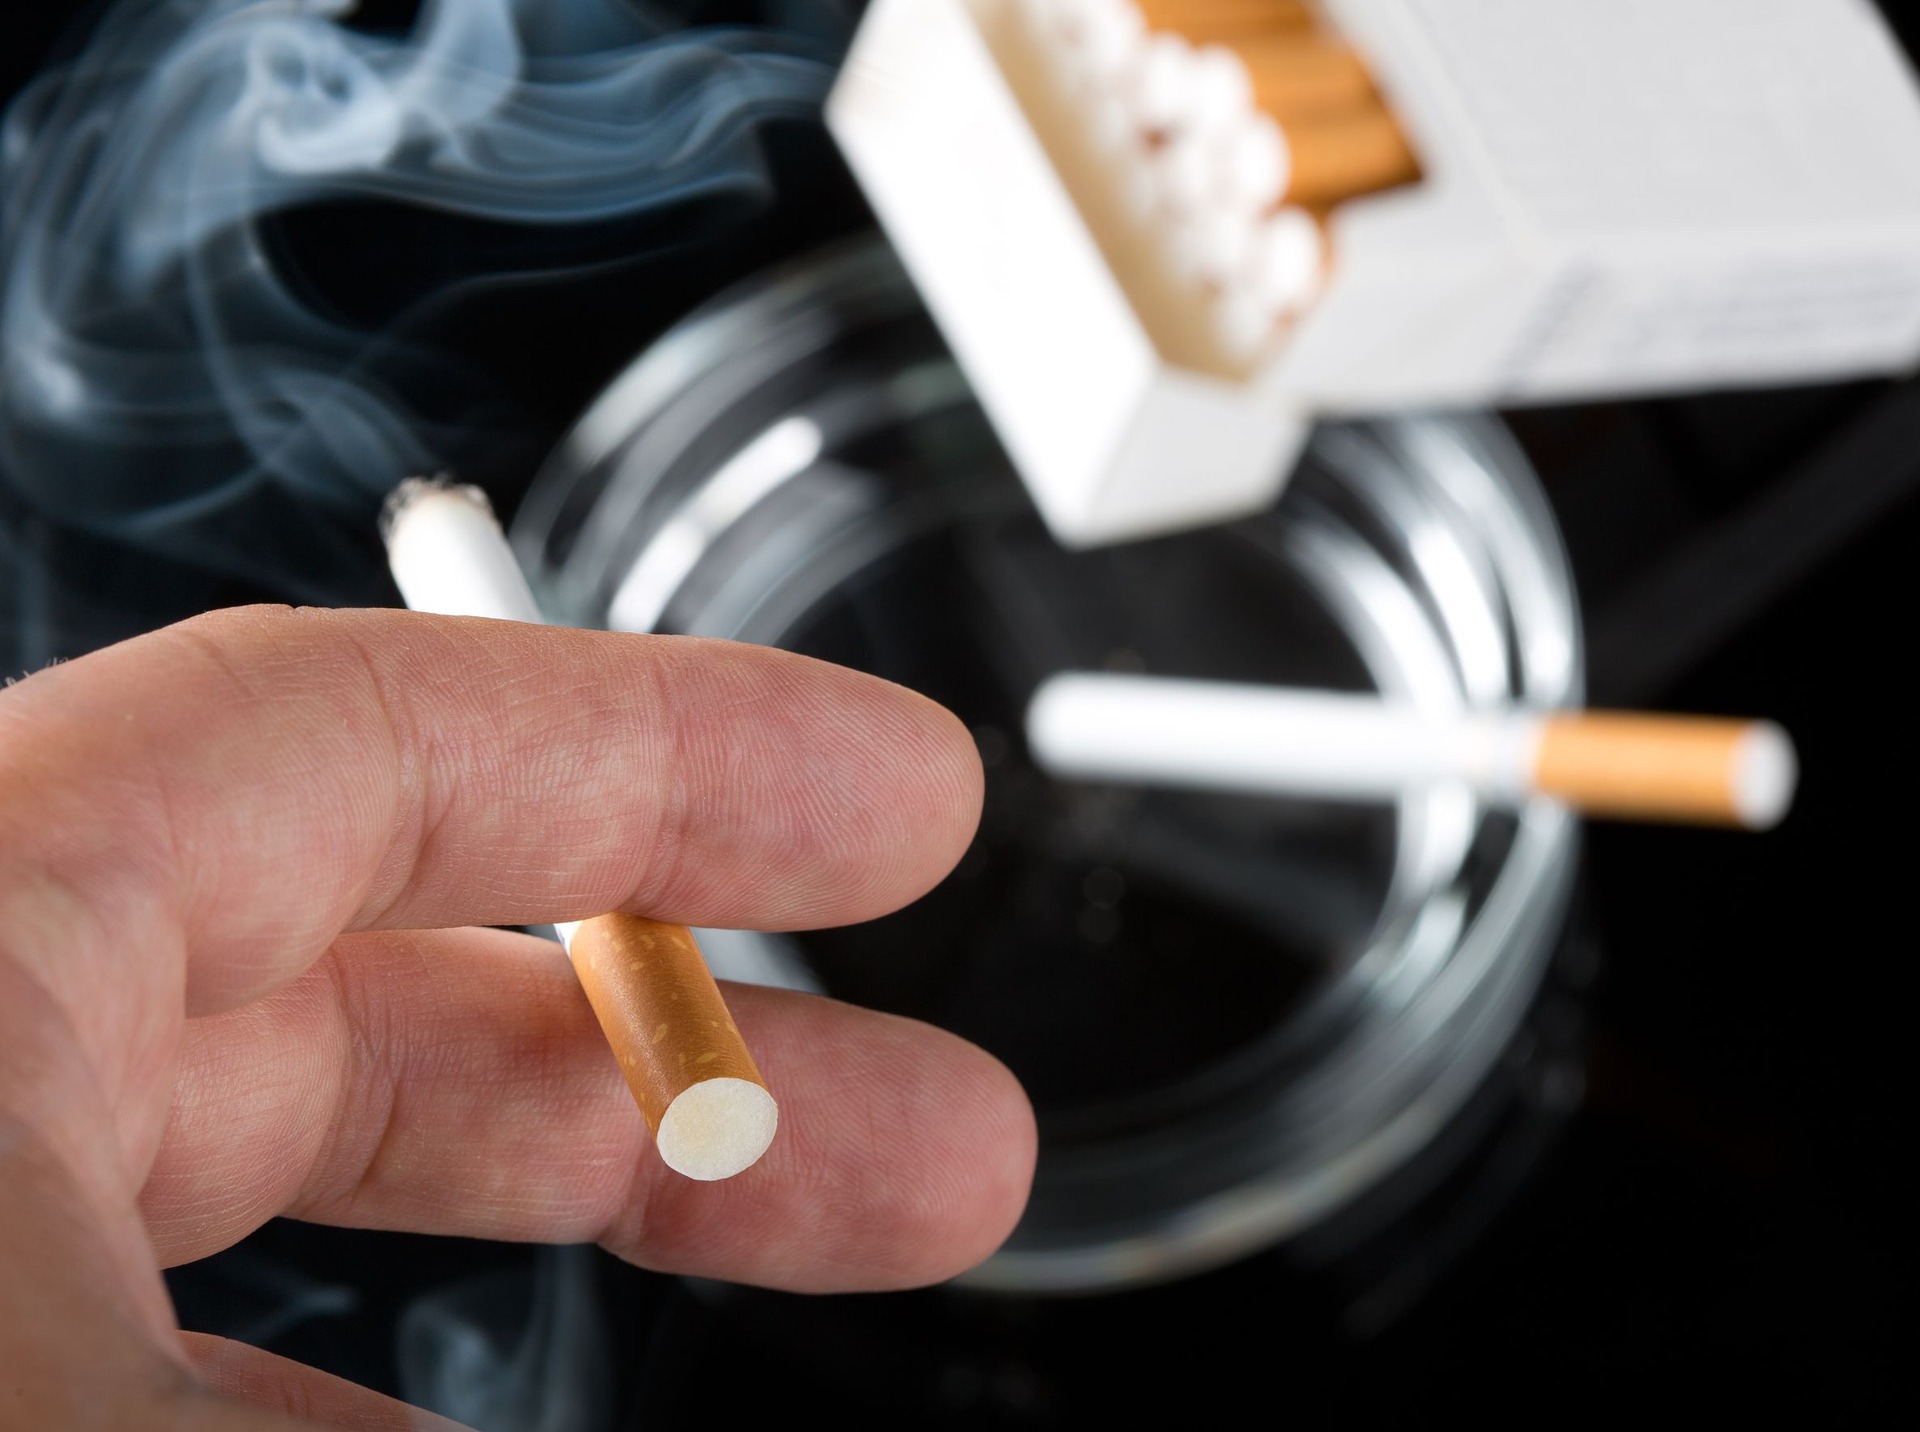 Când renunțați la nicotină, este posibil să aveți simptome neplăcute, cum ar fi sevrajul